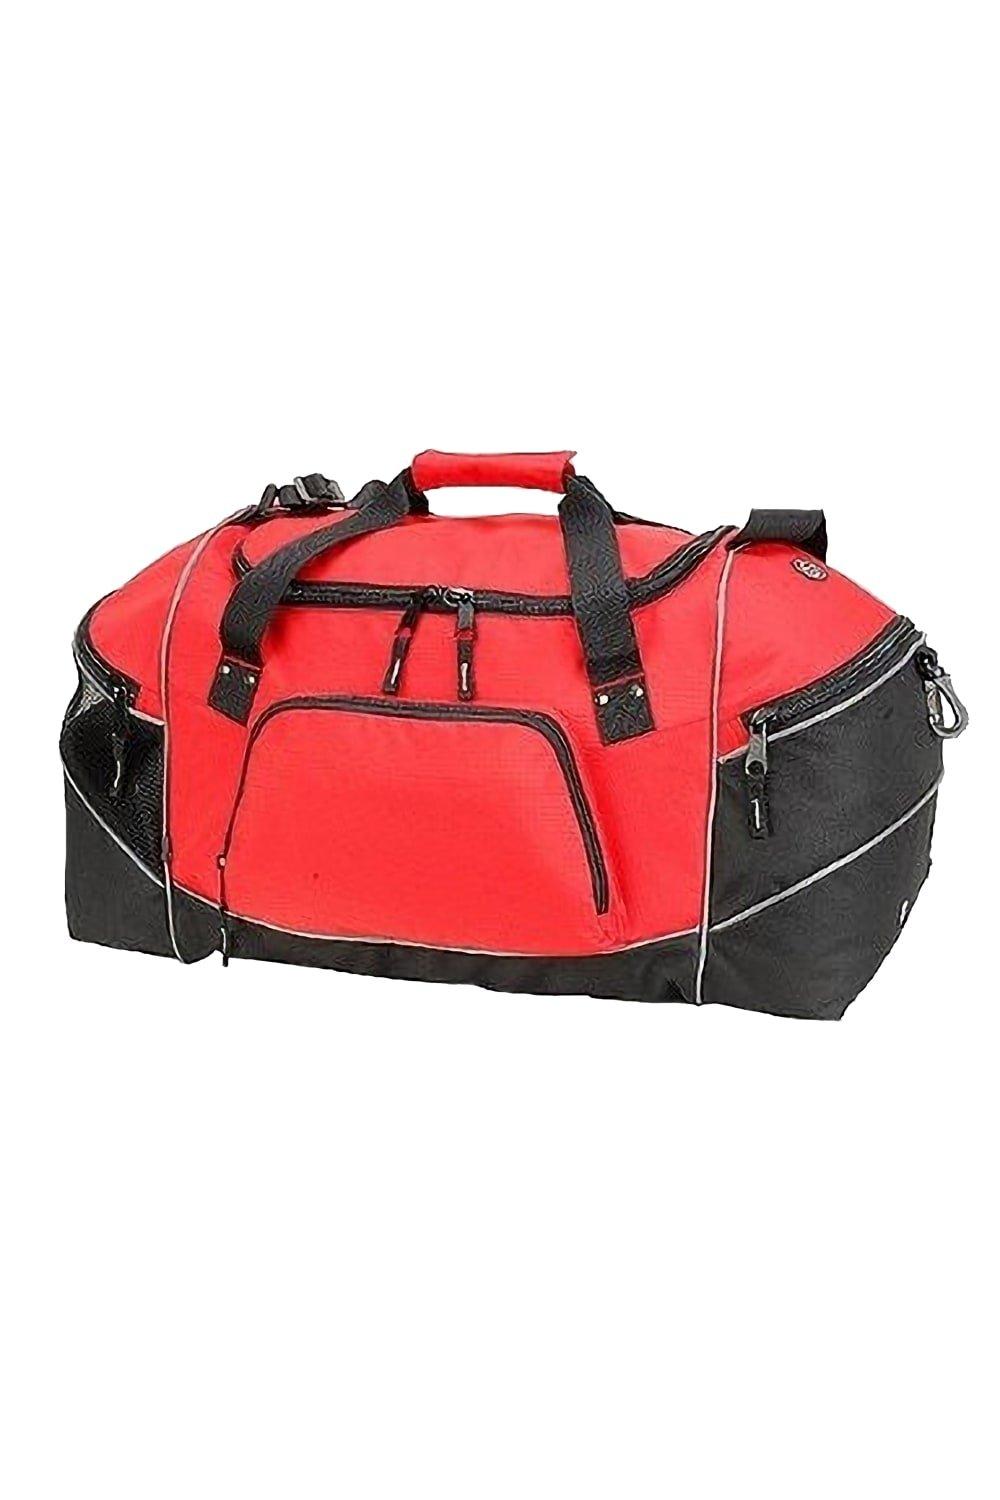 Универсальная дорожная сумка Daytona (50 литров) Shugon, красный ручка газа в сборе универсальная daytona